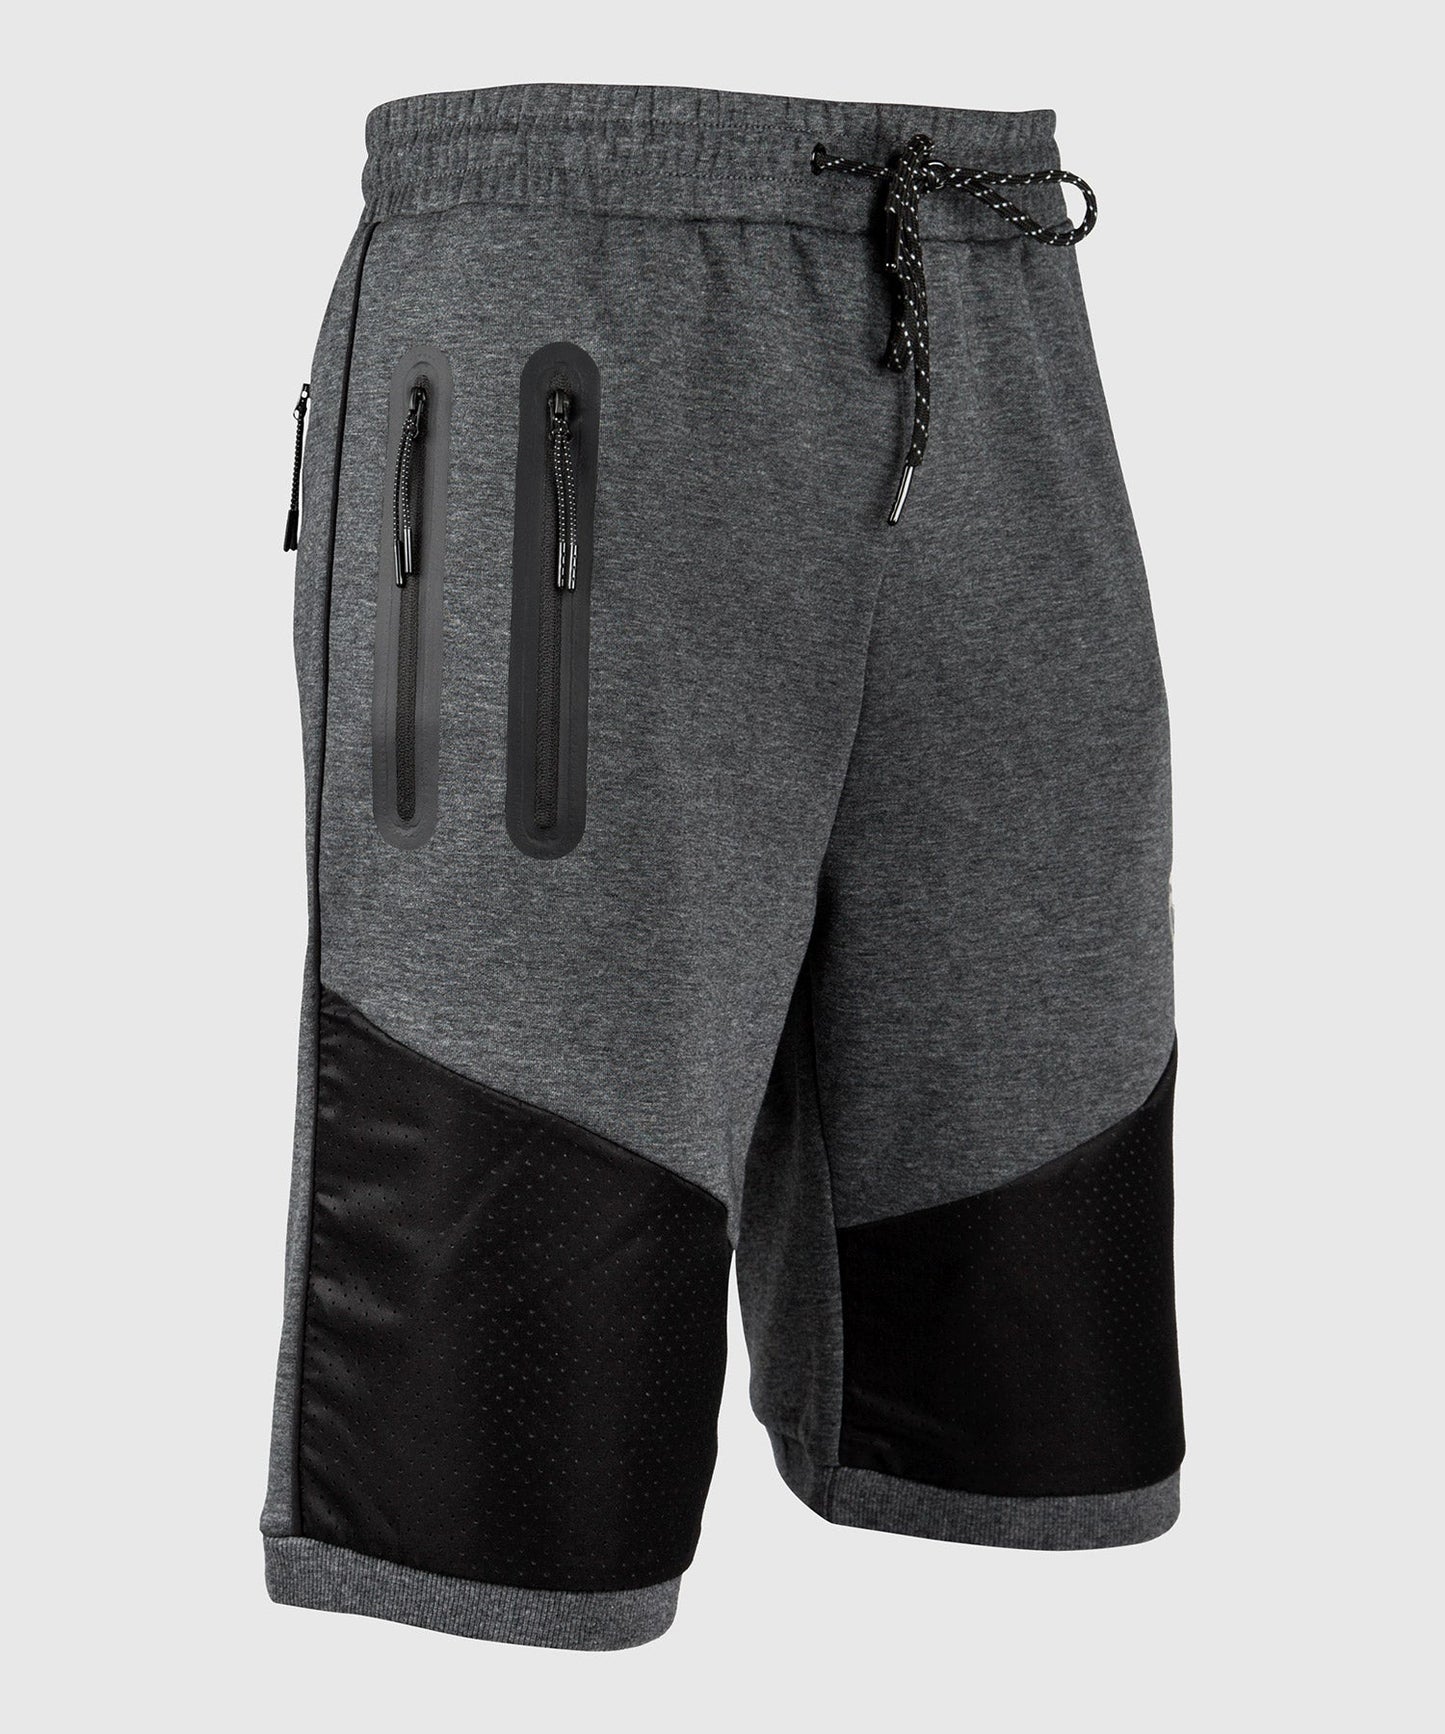 Venum Laser Cotton Shorts - Dark heather grey